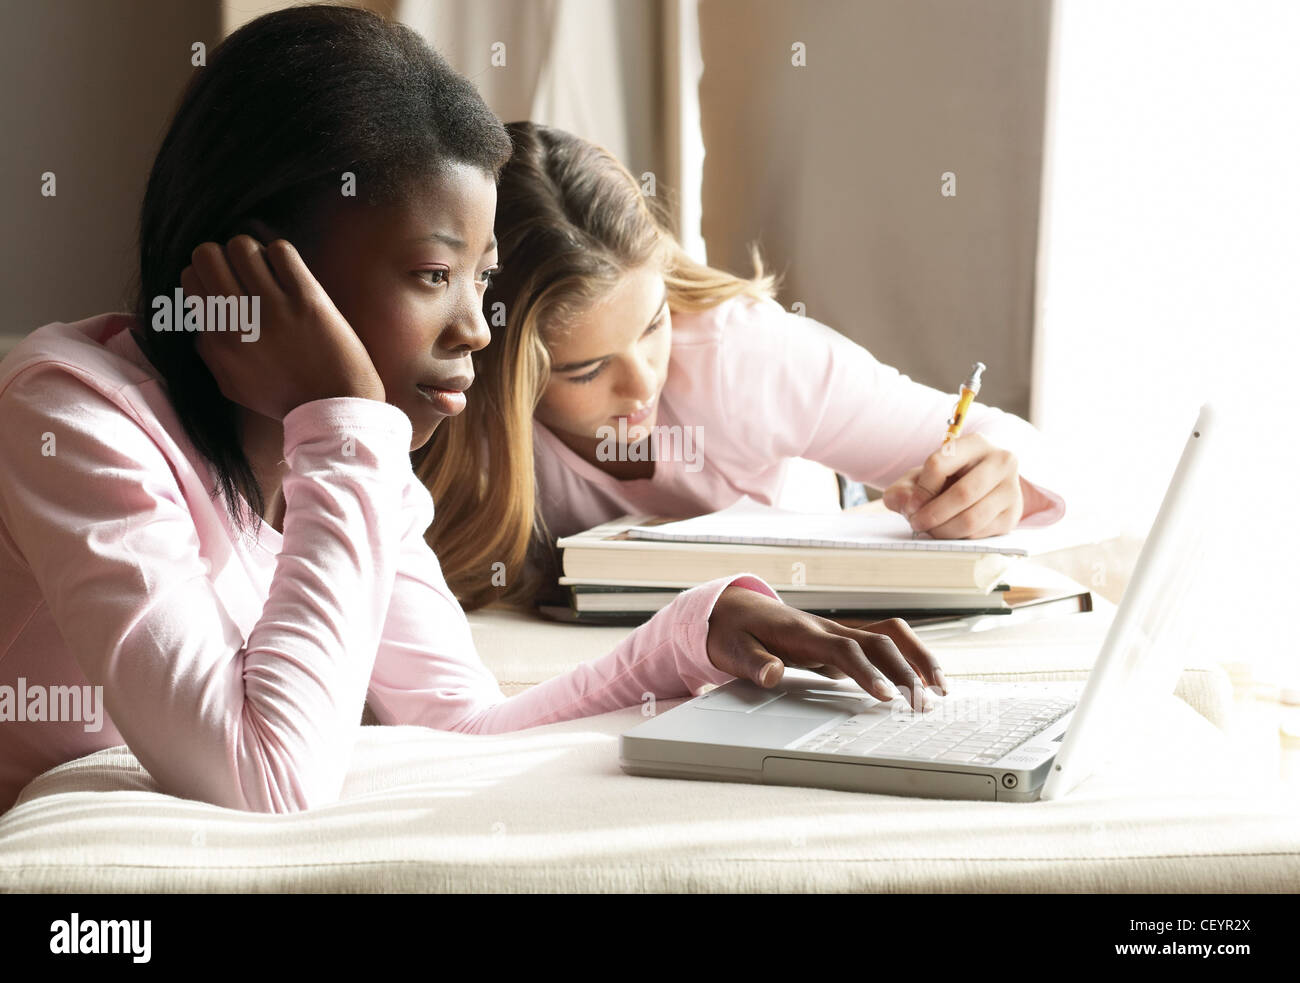 Zwei Mädchen beide trägt eine rosa lange Ärmel Top Mädchen langes blondes Haar schreiben auf Notizpapier stützte sich auf Bücher, Mädchen schwarze Haare Stockfoto